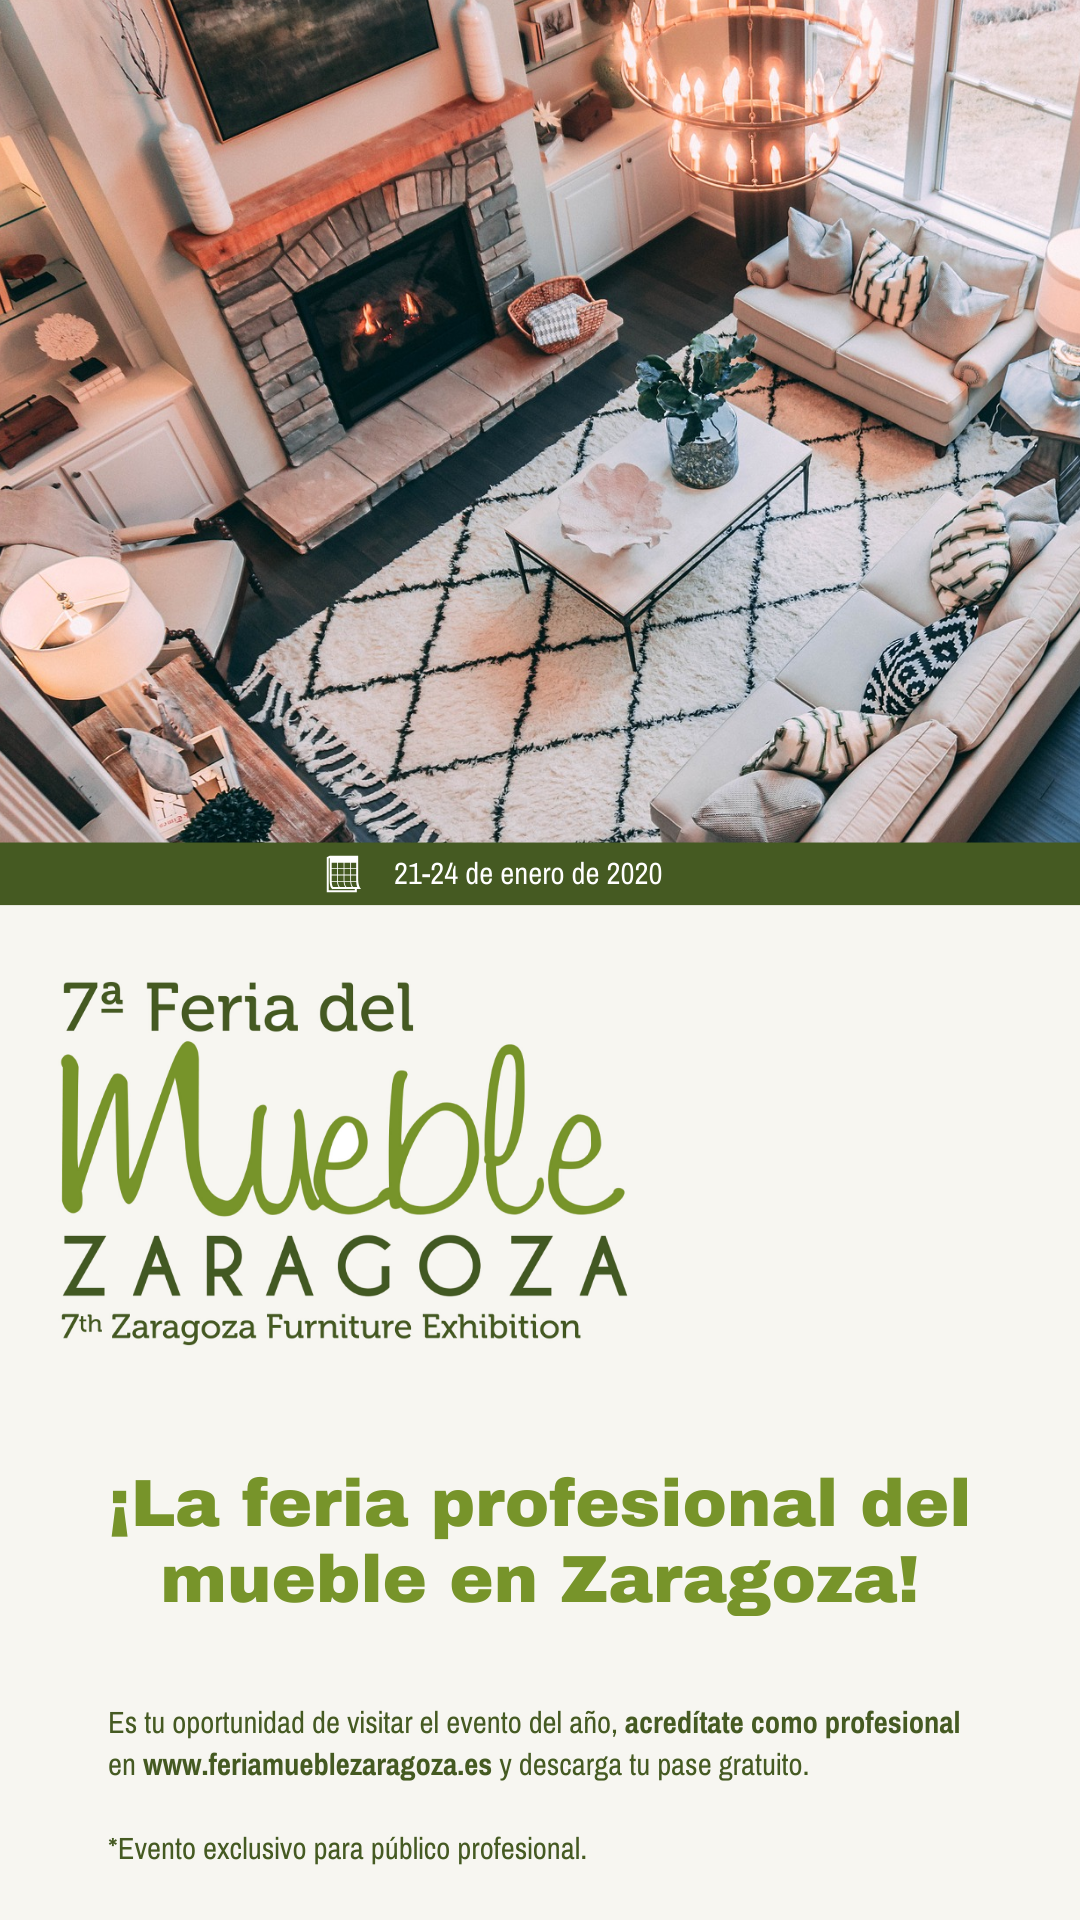 FMZ 2020: la feria profesional del mueble en Zaragoza